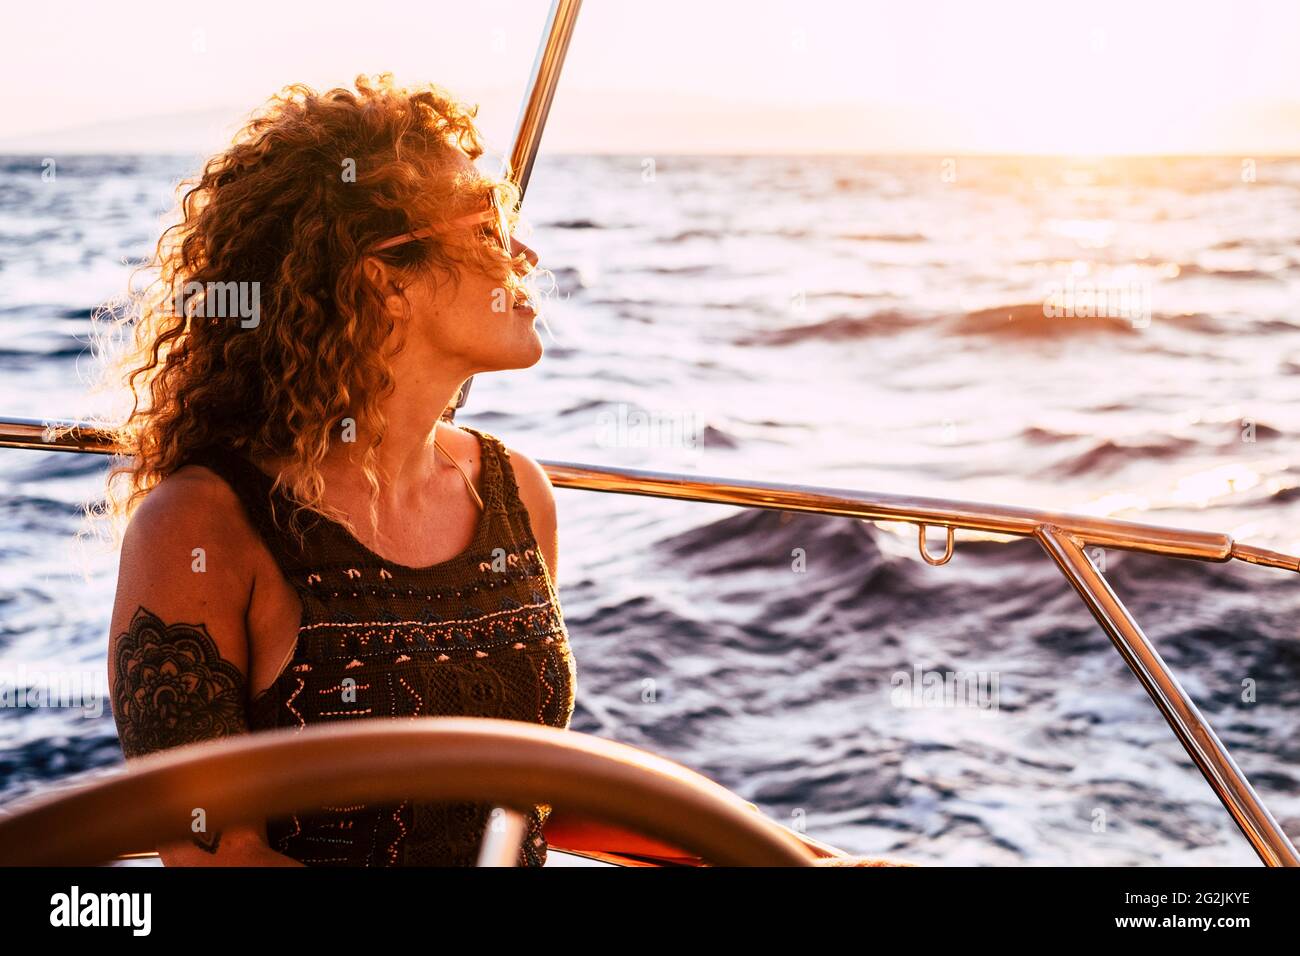 Femme adulte riche appréciez le style de vie de luxe voyageant sur voilier pour les vacances d'été - jolie femme personnes en plein air liberté avec l'océan autour de la mer au coucher du soleil Banque D'Images